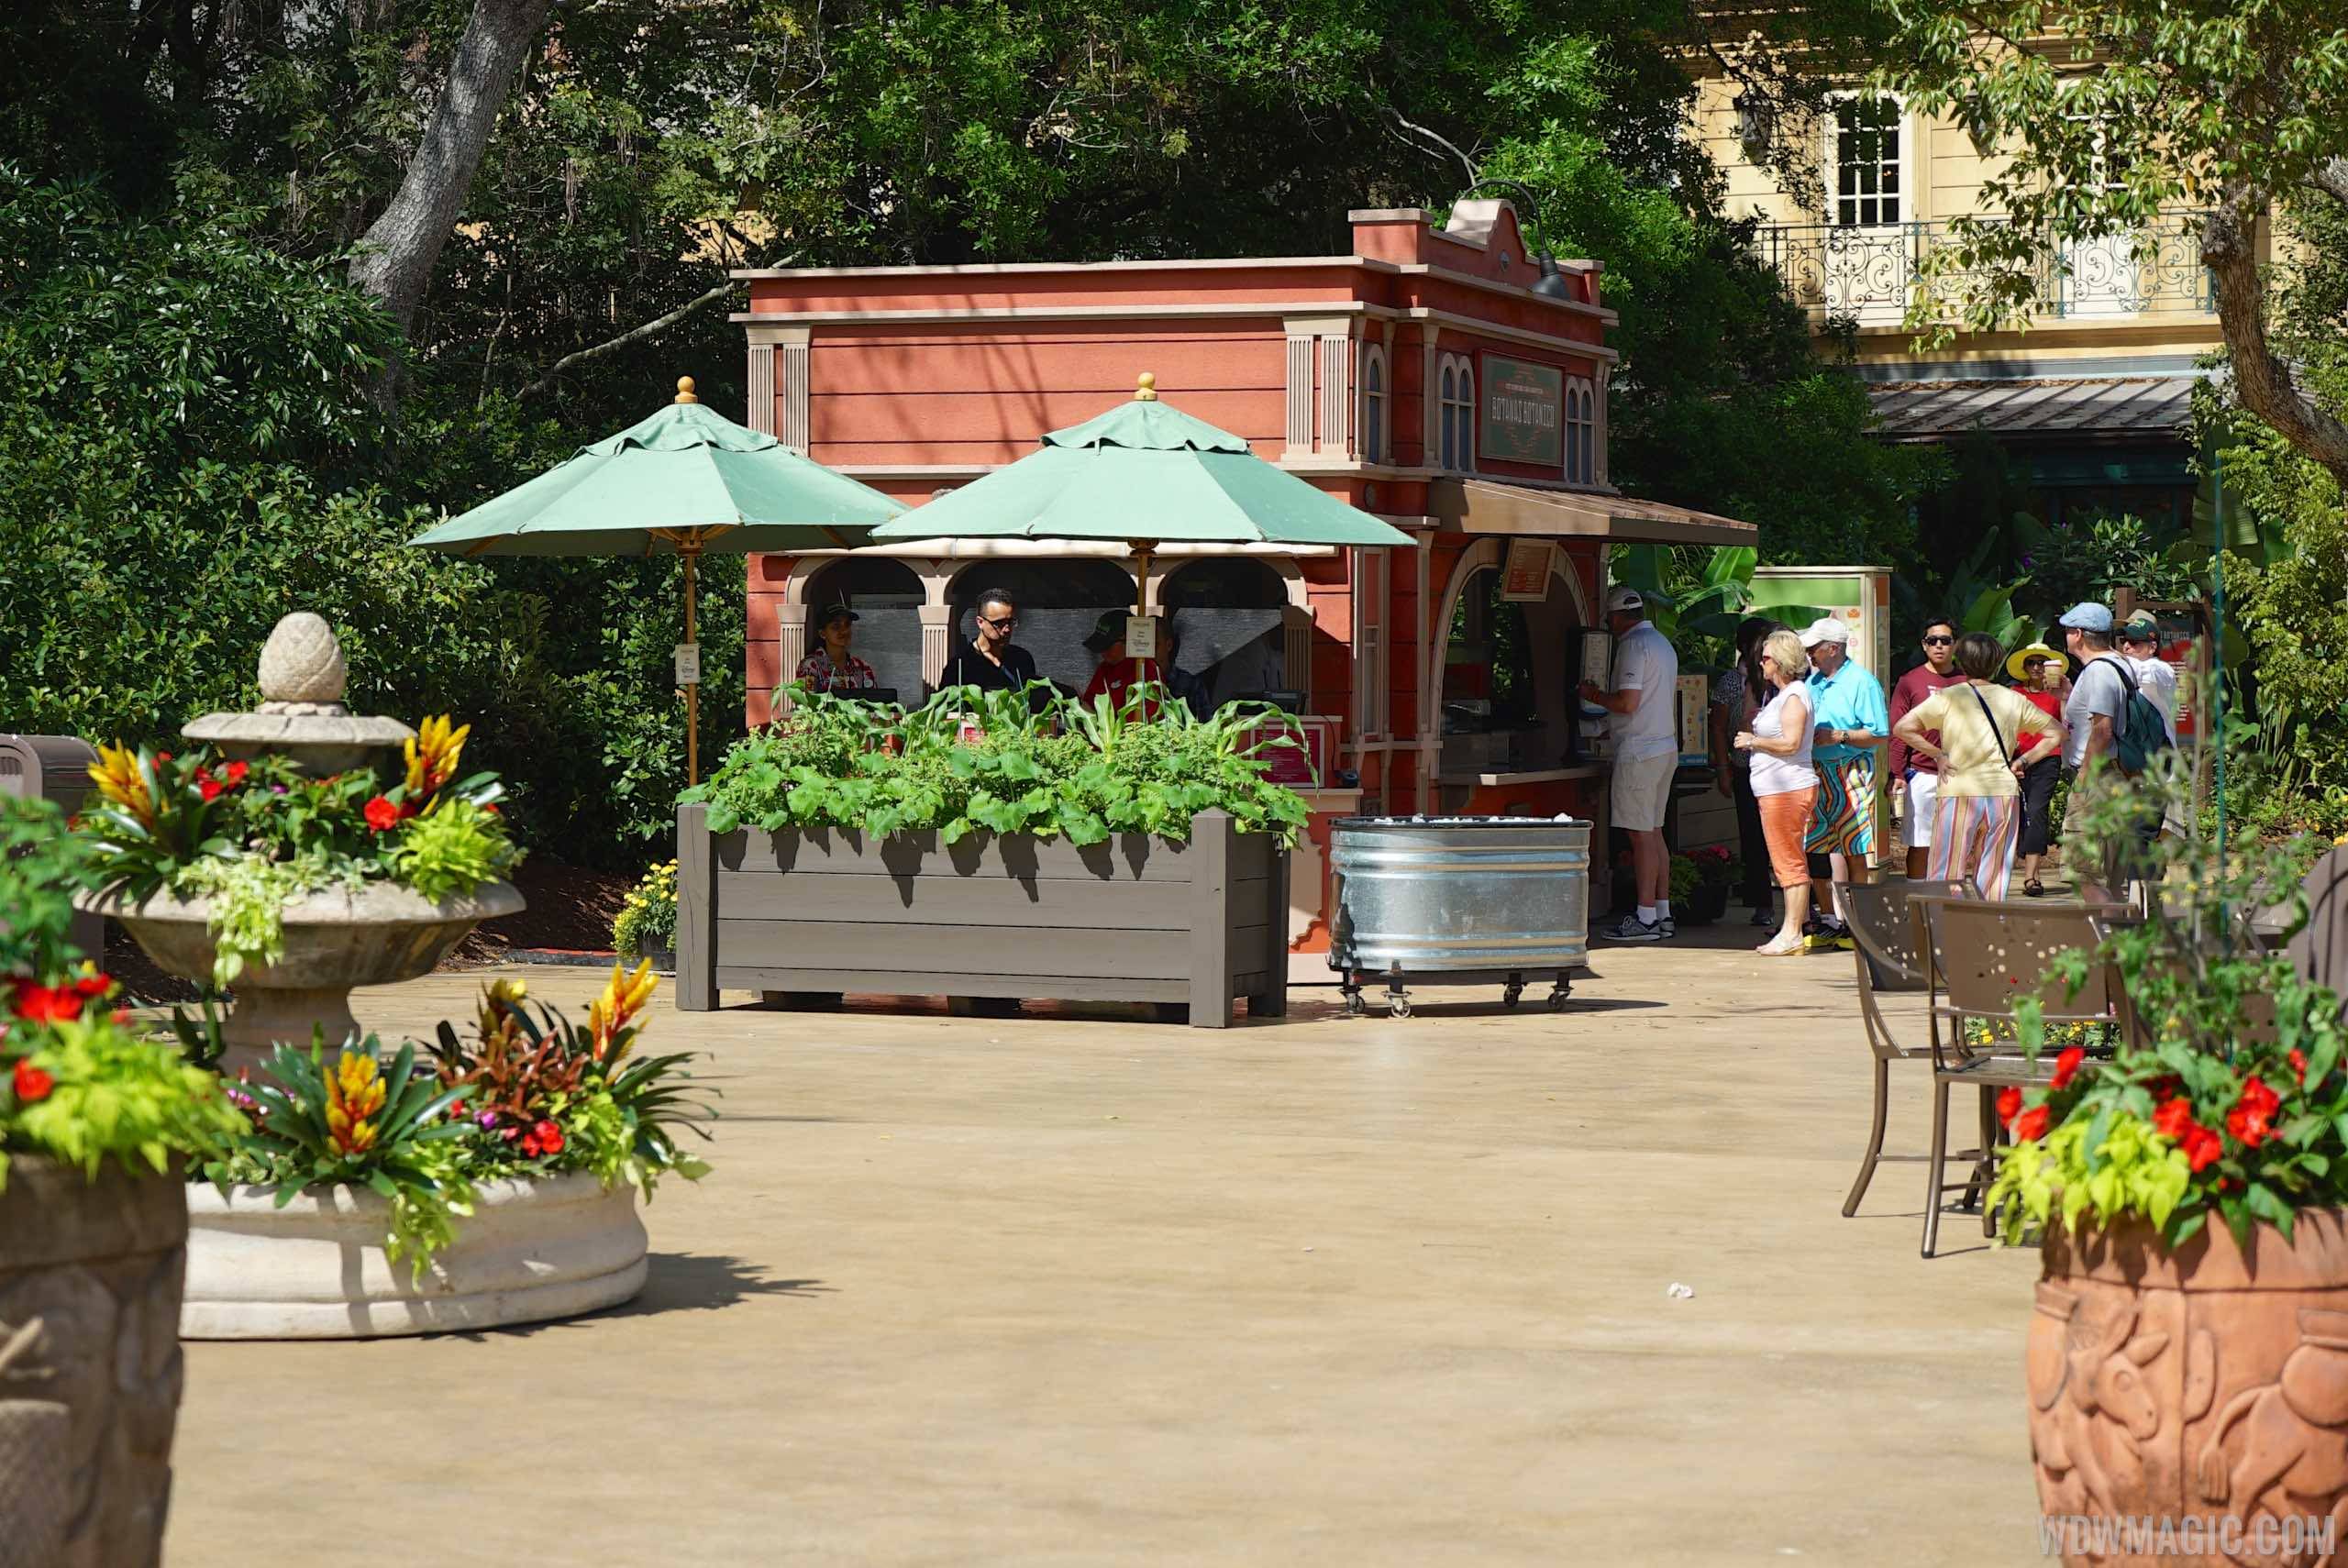 2015 Epcot Flower and Garden Festival Outdoor Kitchen - Botanas Botanico kiosk